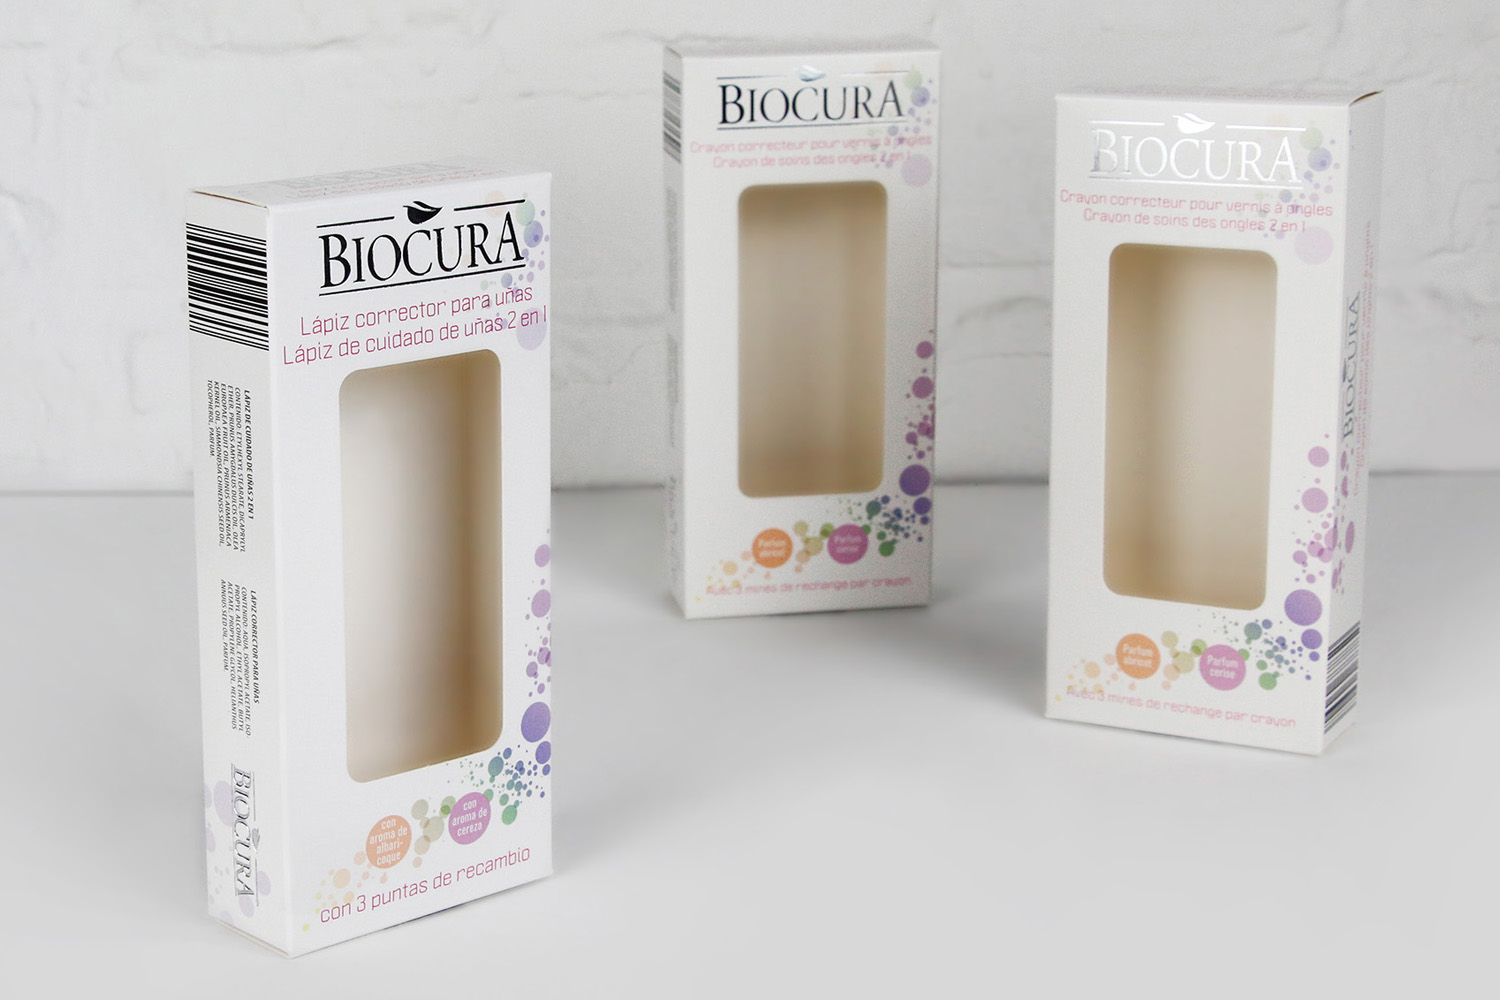 Faltschachtel Ausstanzung Kosmetik Biocura Beutler Packaging 2